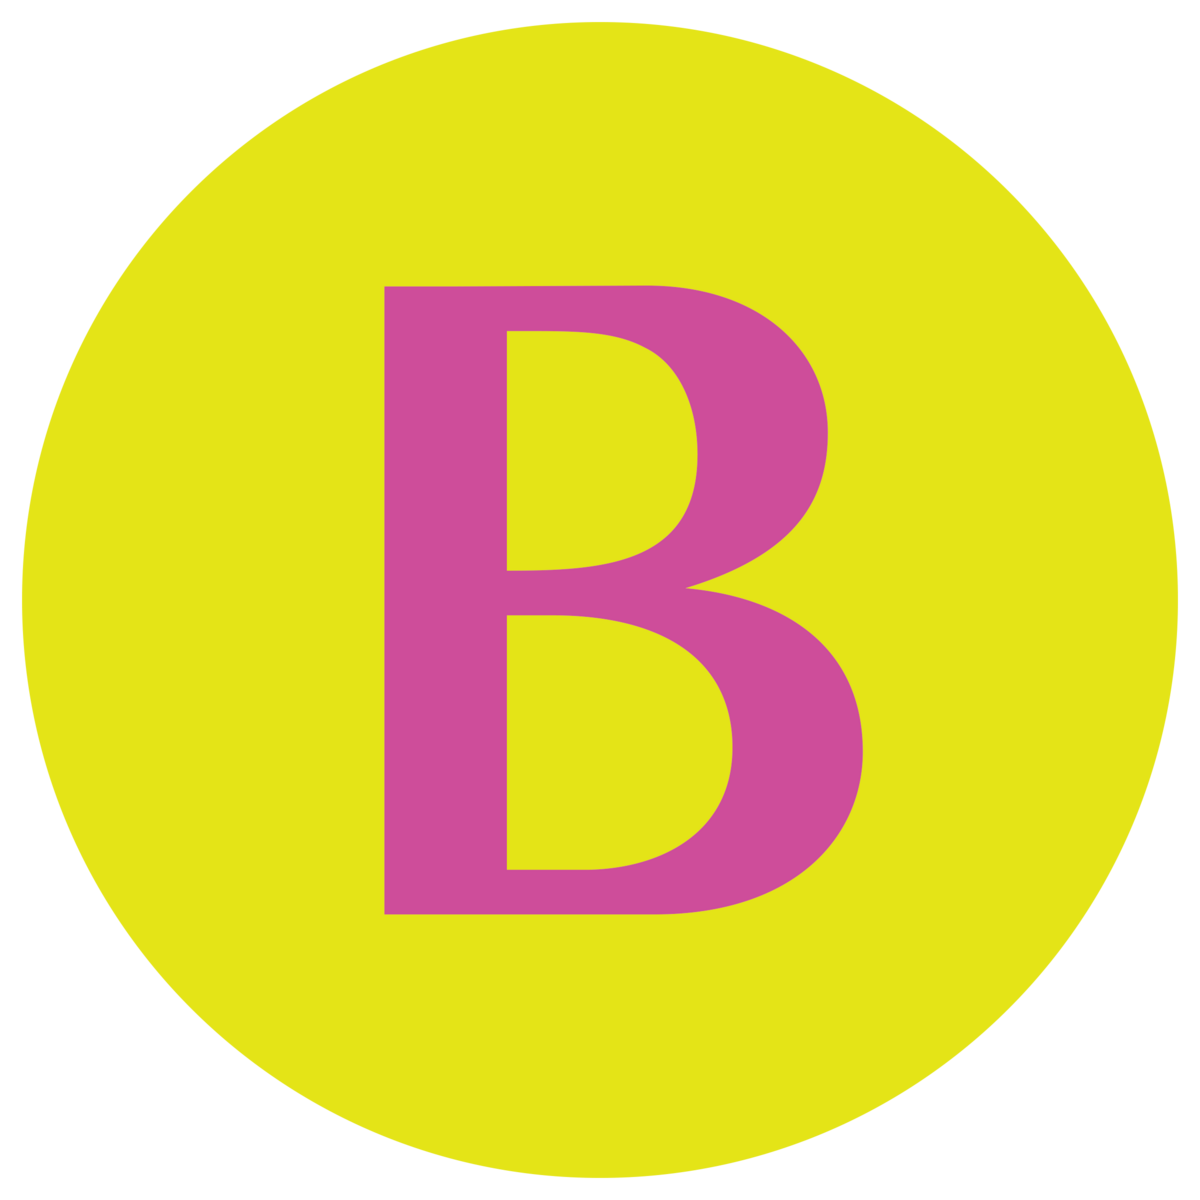 Purple B Yellow Circle